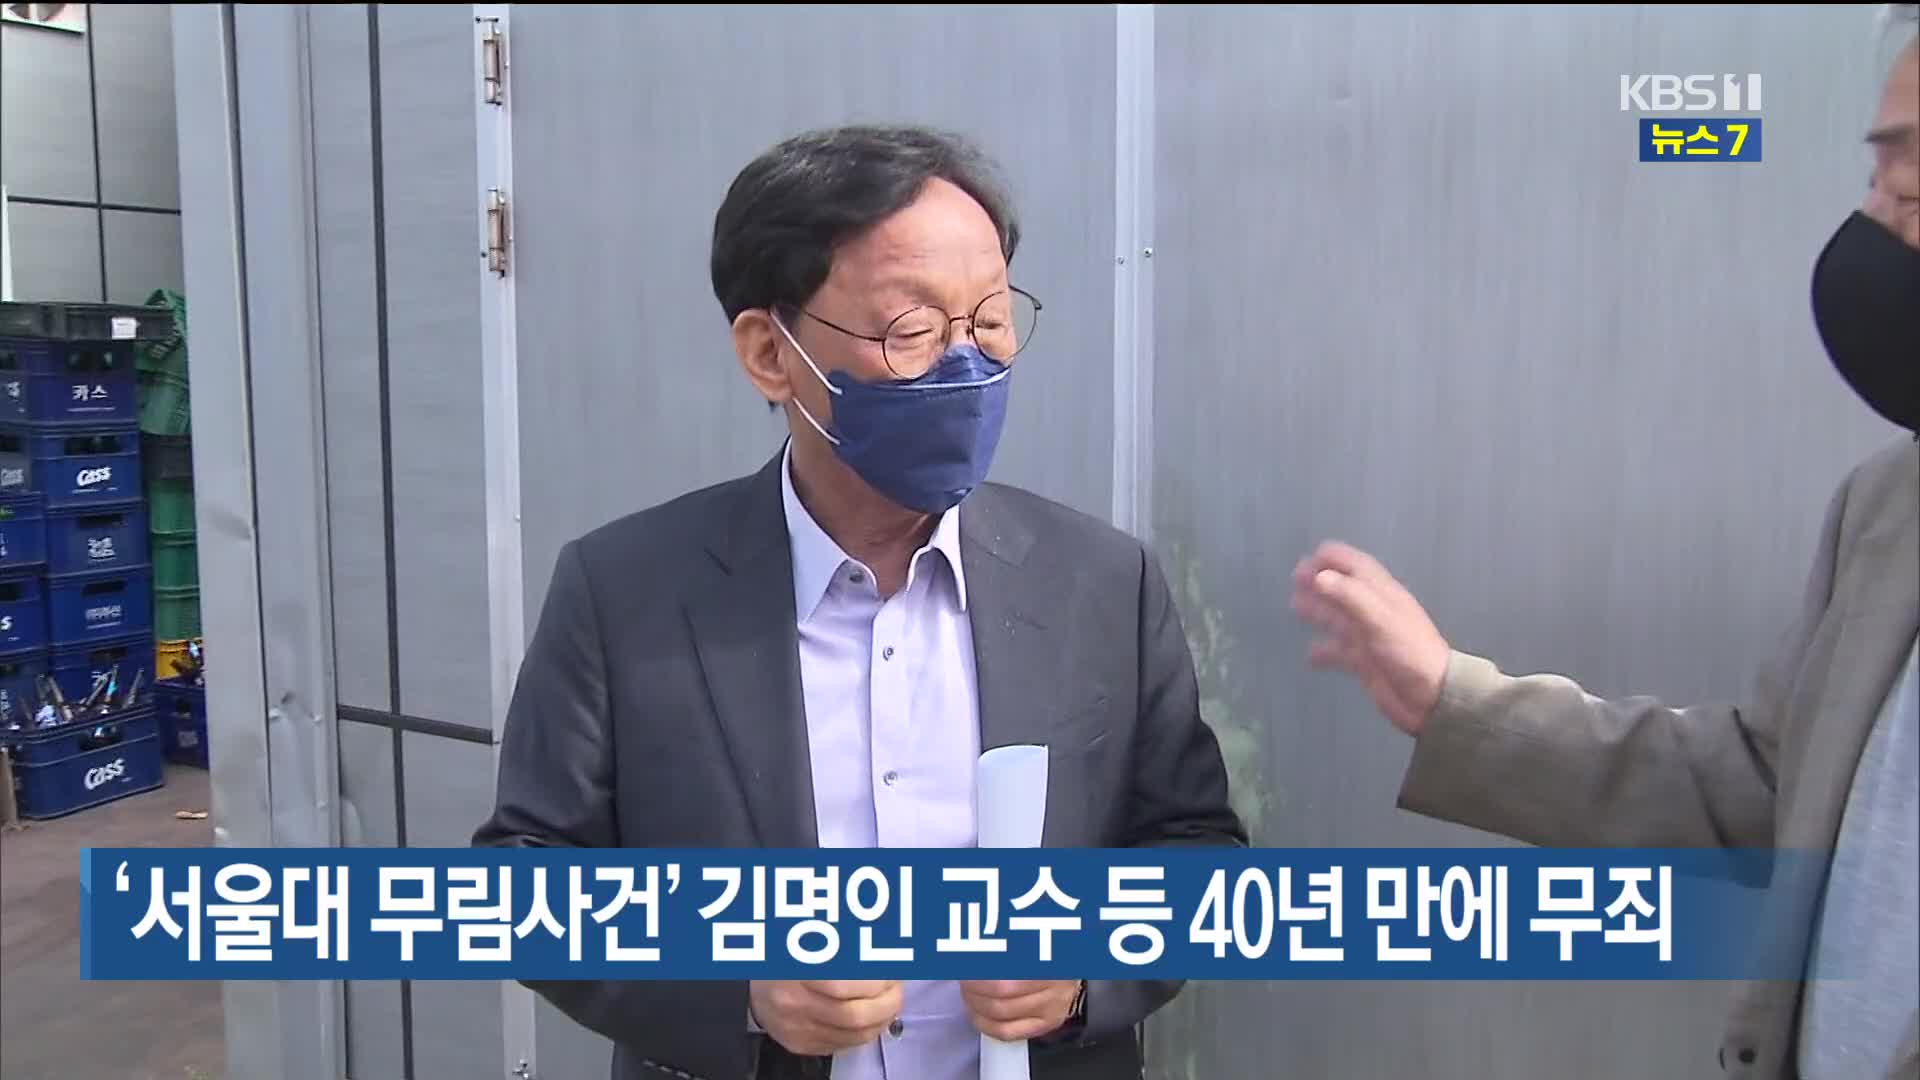 ‘서울대 무림사건’ 김명인 교수 등 40년 만에 무죄